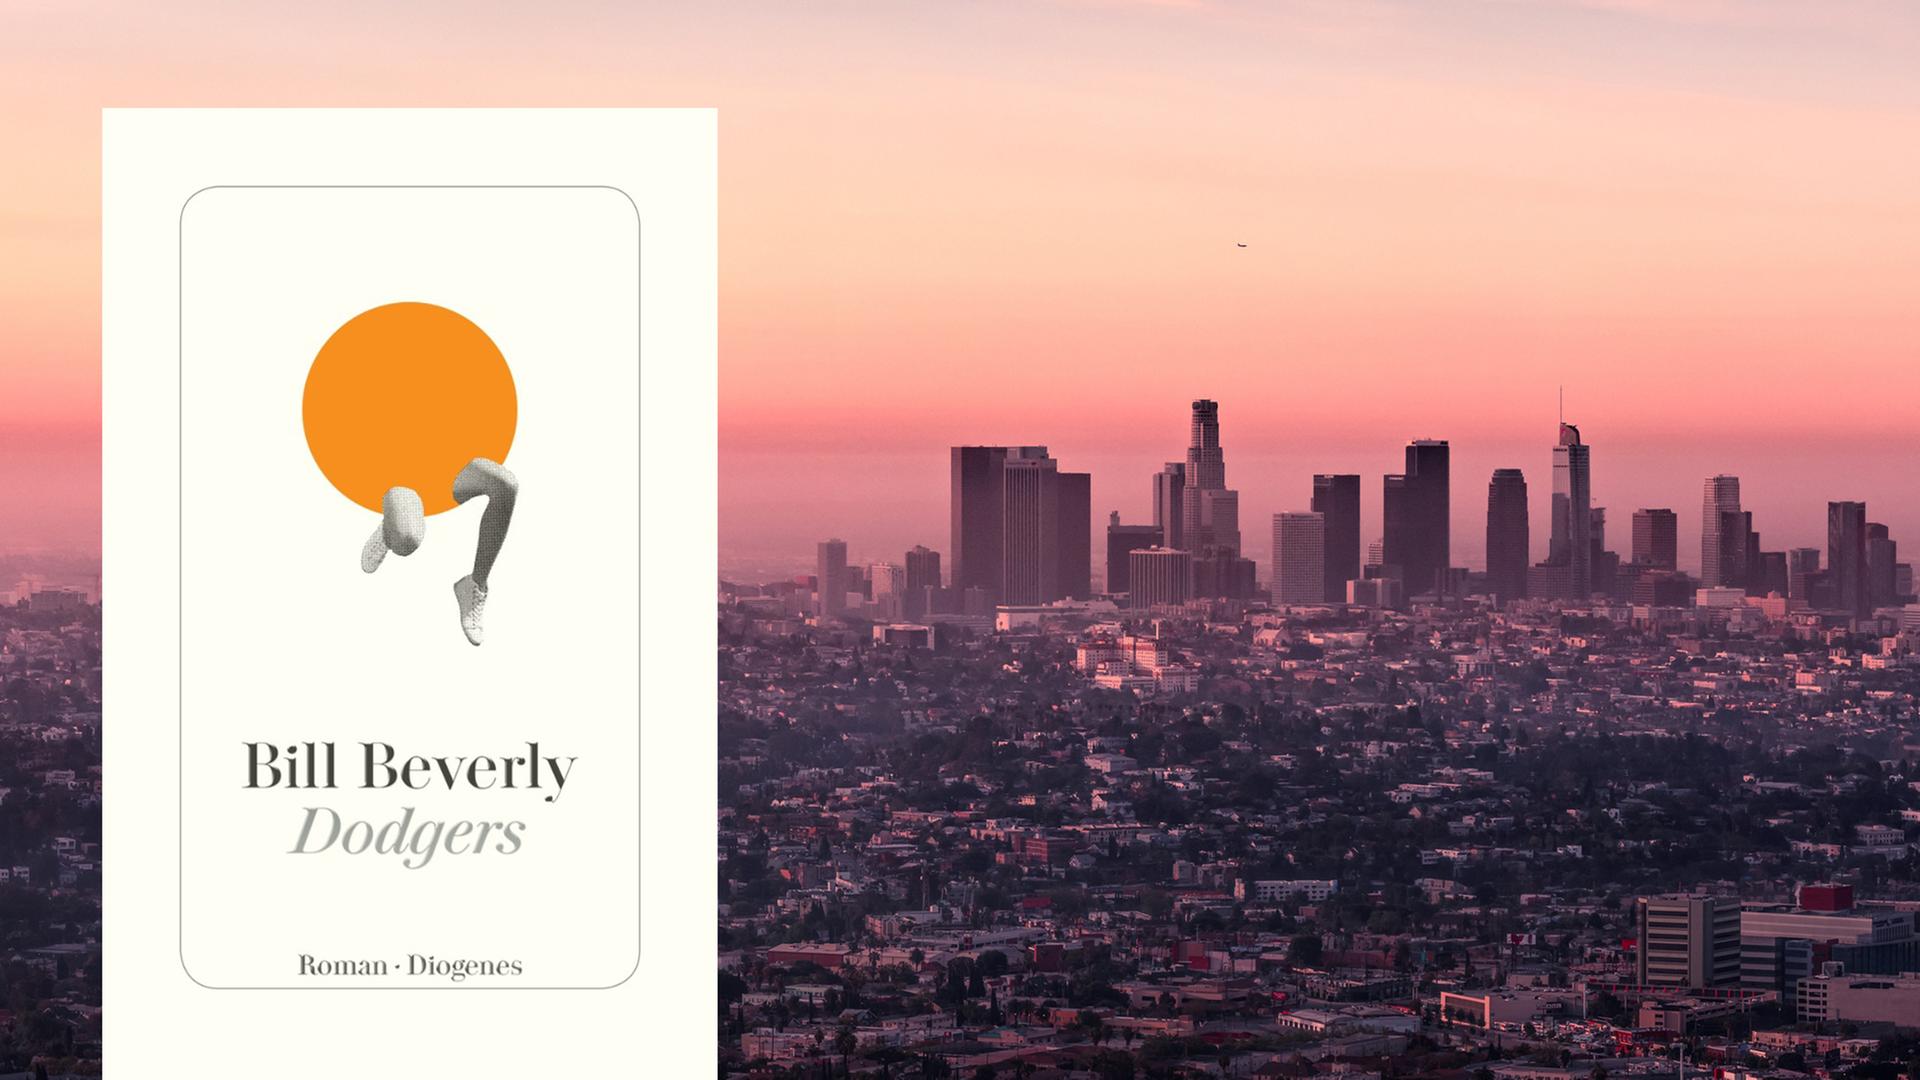 Die Skyline von Los Angeles im violett-rötlichen Abendlicht, darüber das schlicht gestaltete Buchcover zu Bill Beverlys Roman.